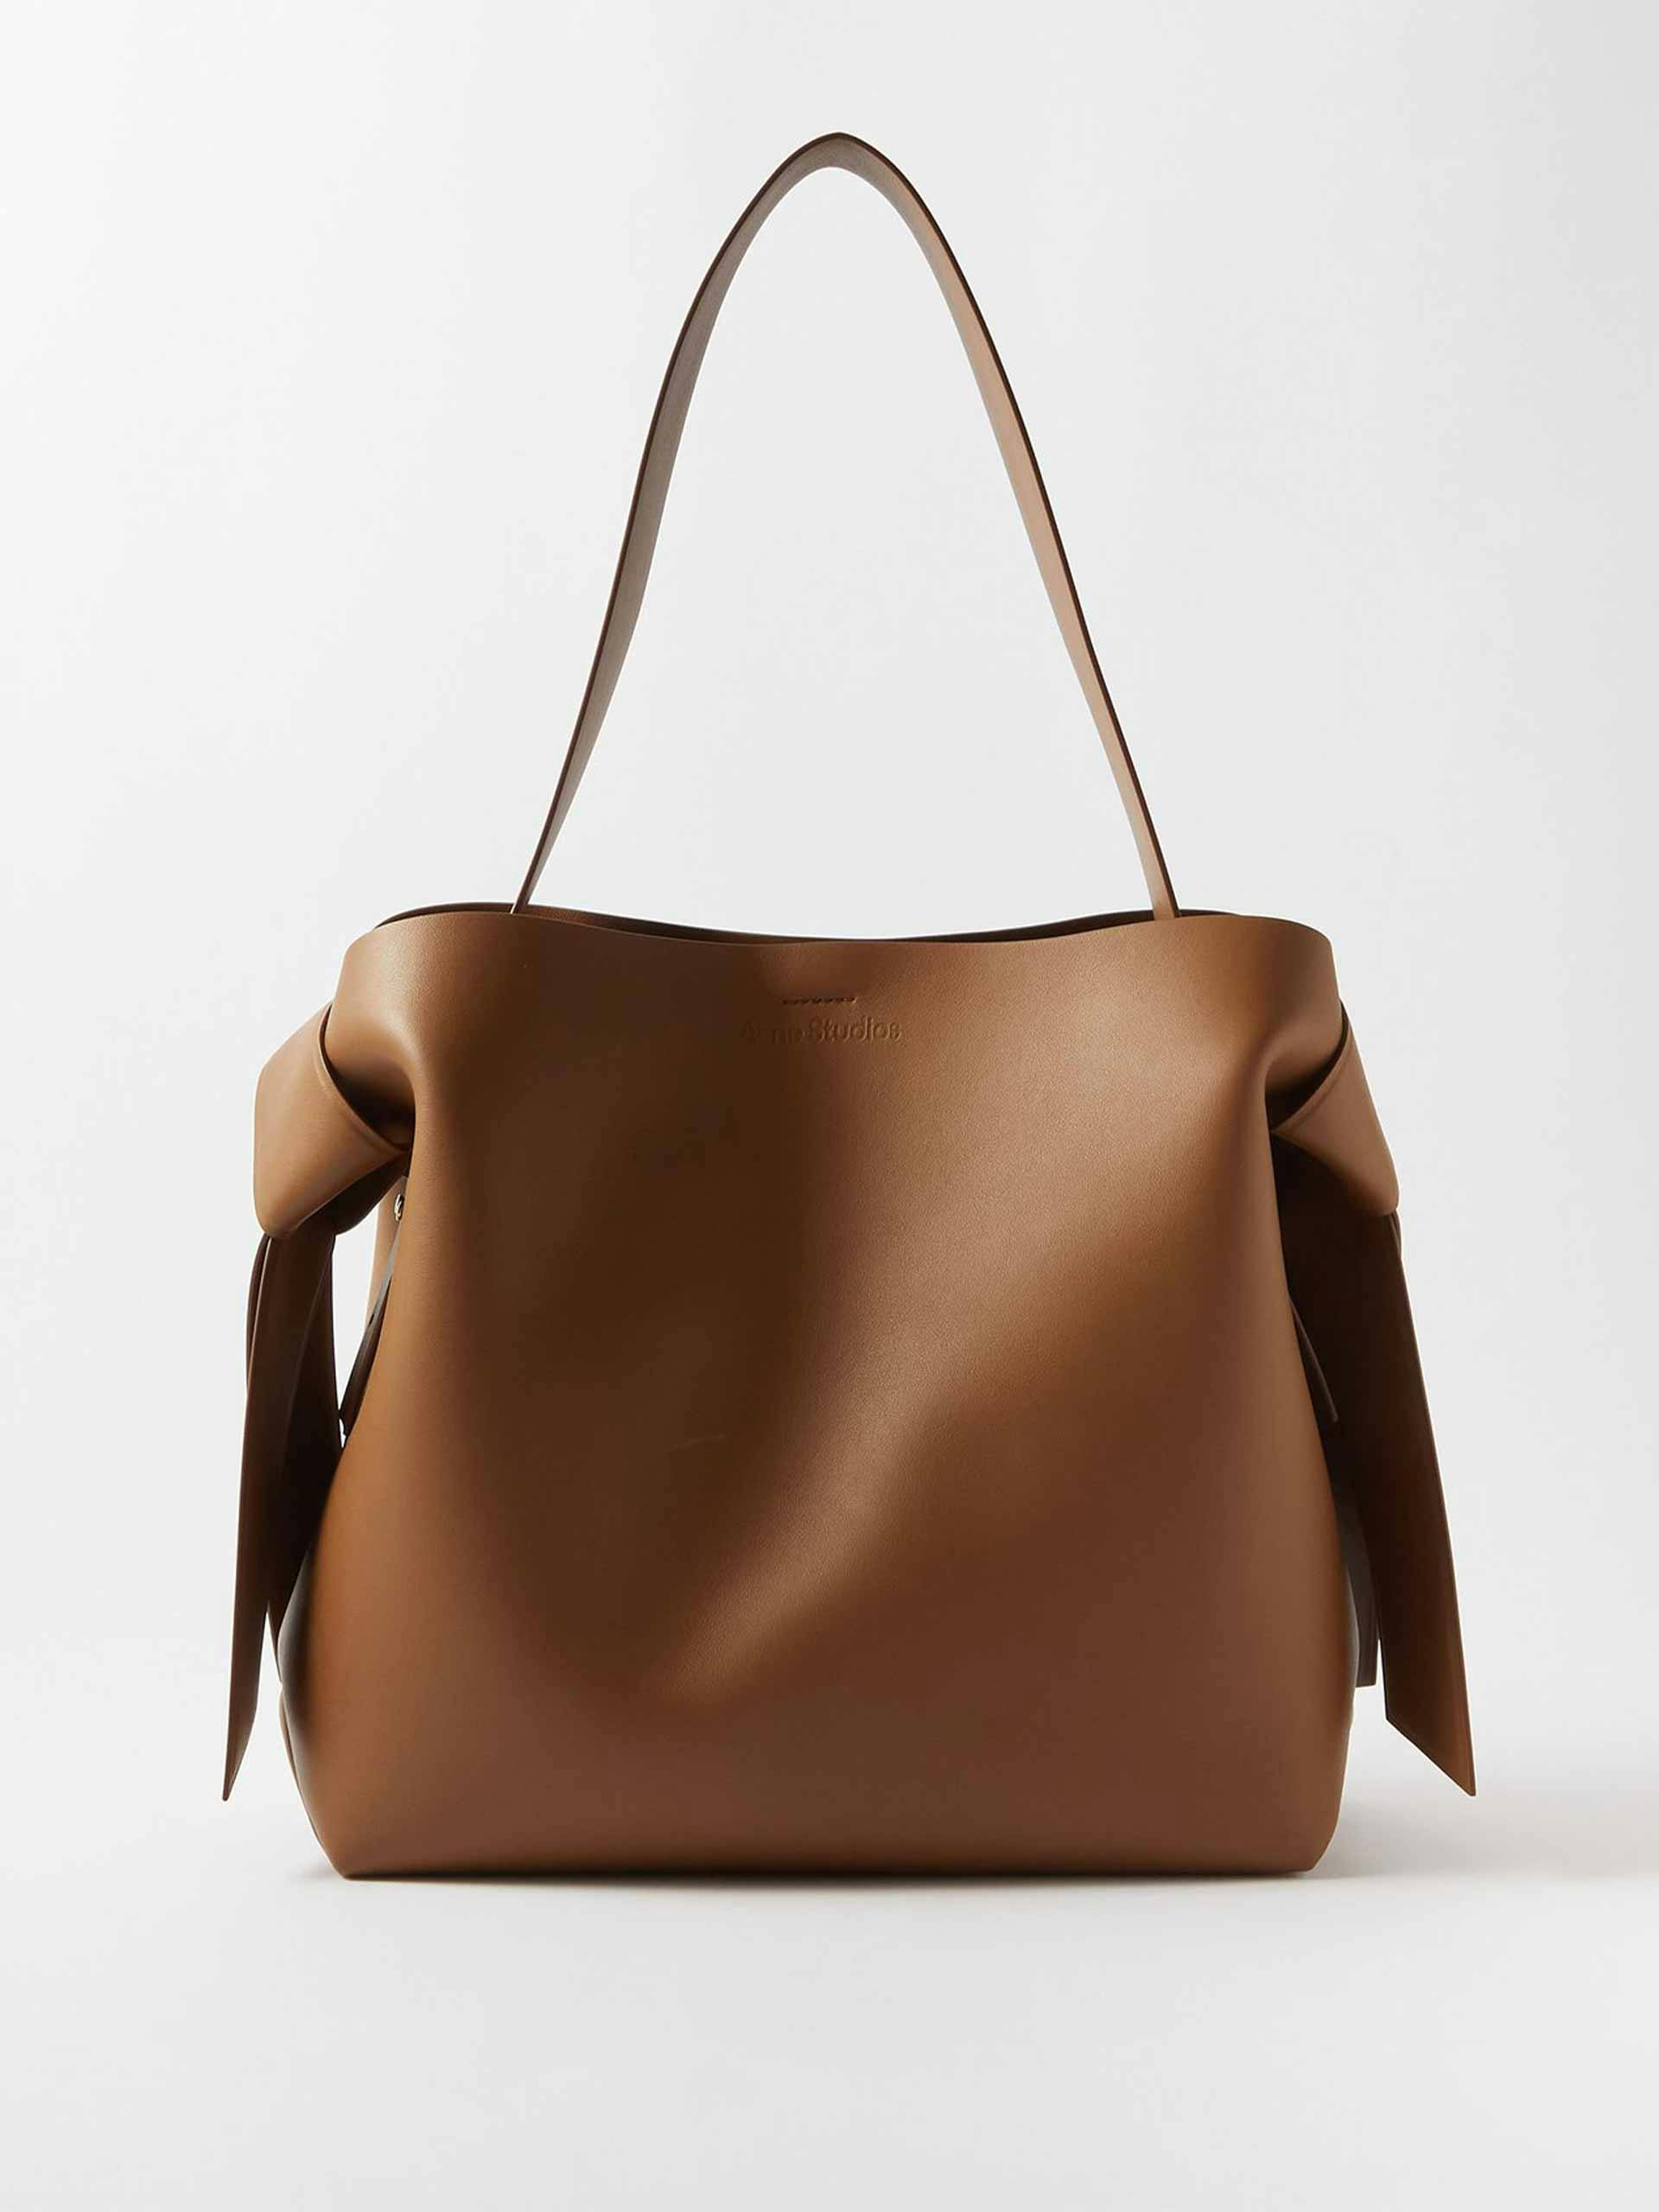 Medium brown leather shoulder bag